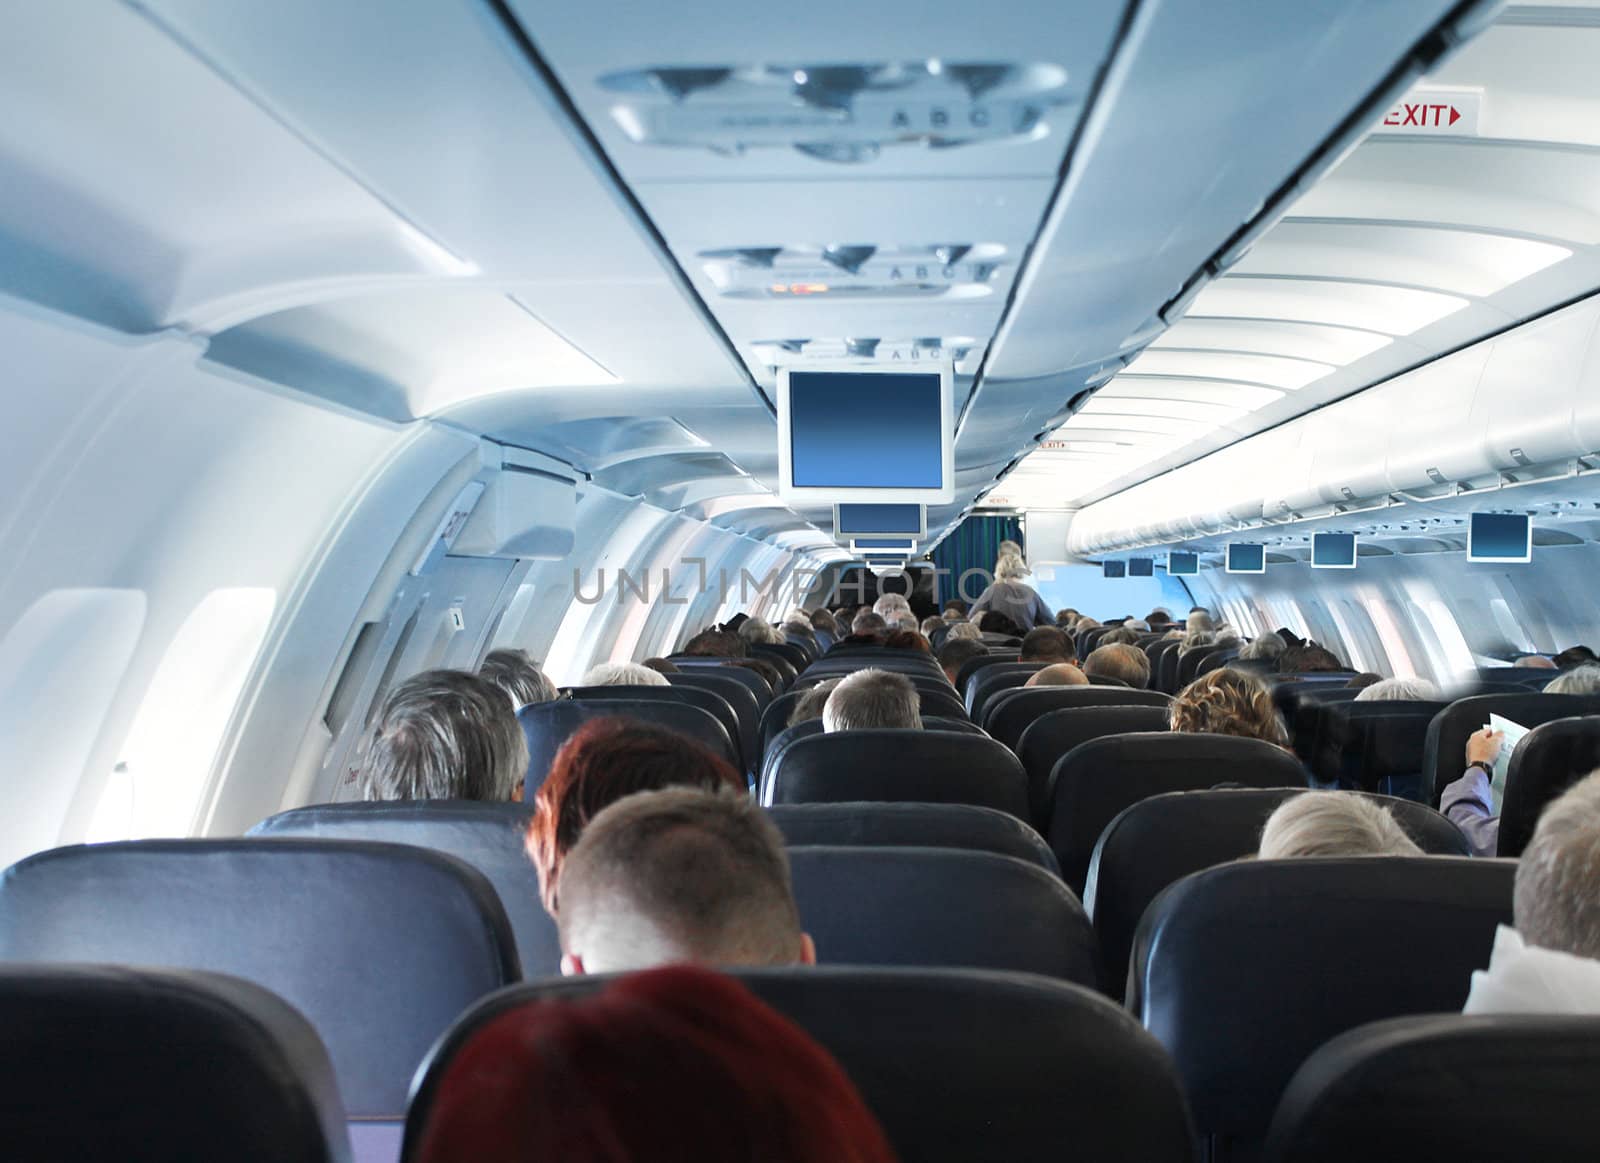 Passengers in airplane cabin interior by anterovium